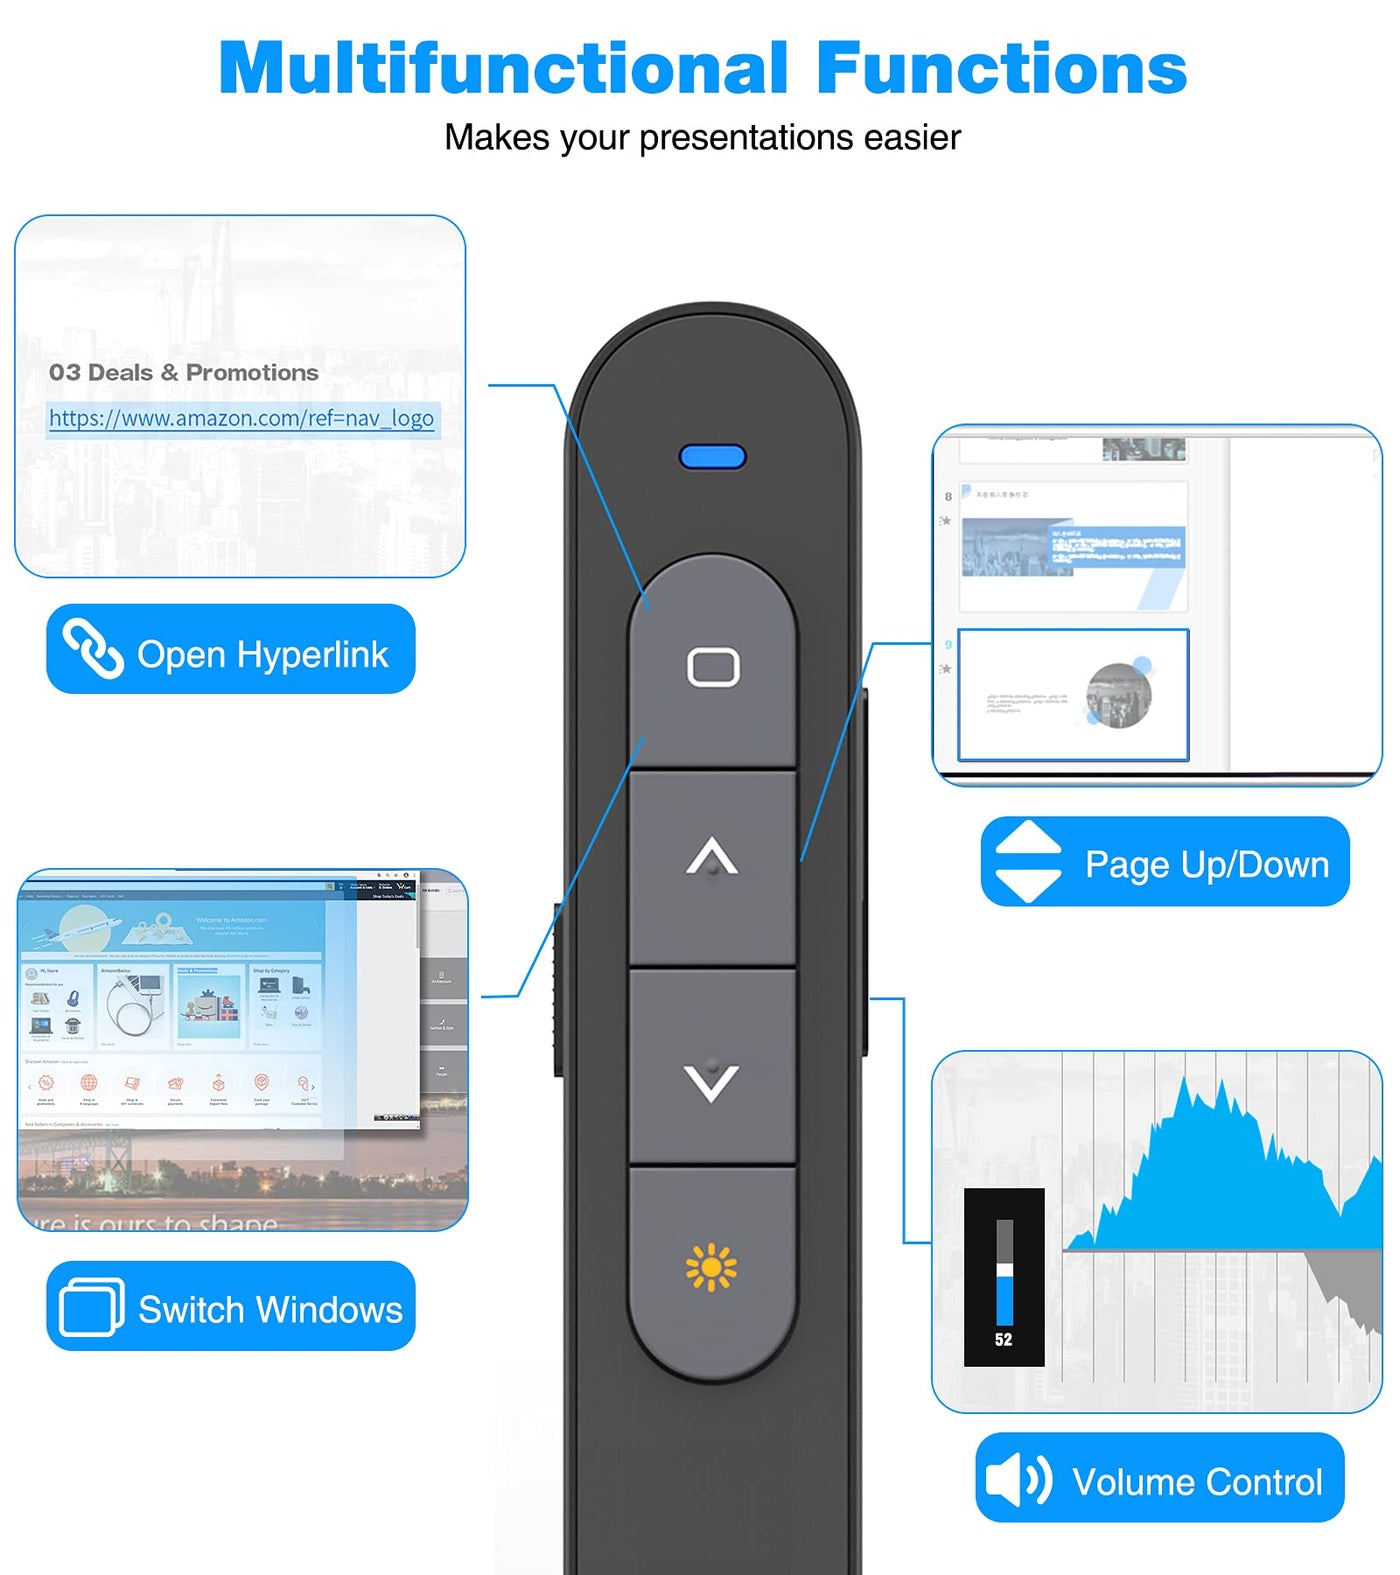 Wireless Presenter Remote, Presentation Clicker with Hyperlink & Volume  Remote Control PowerPoint Office Presentation Clicker for